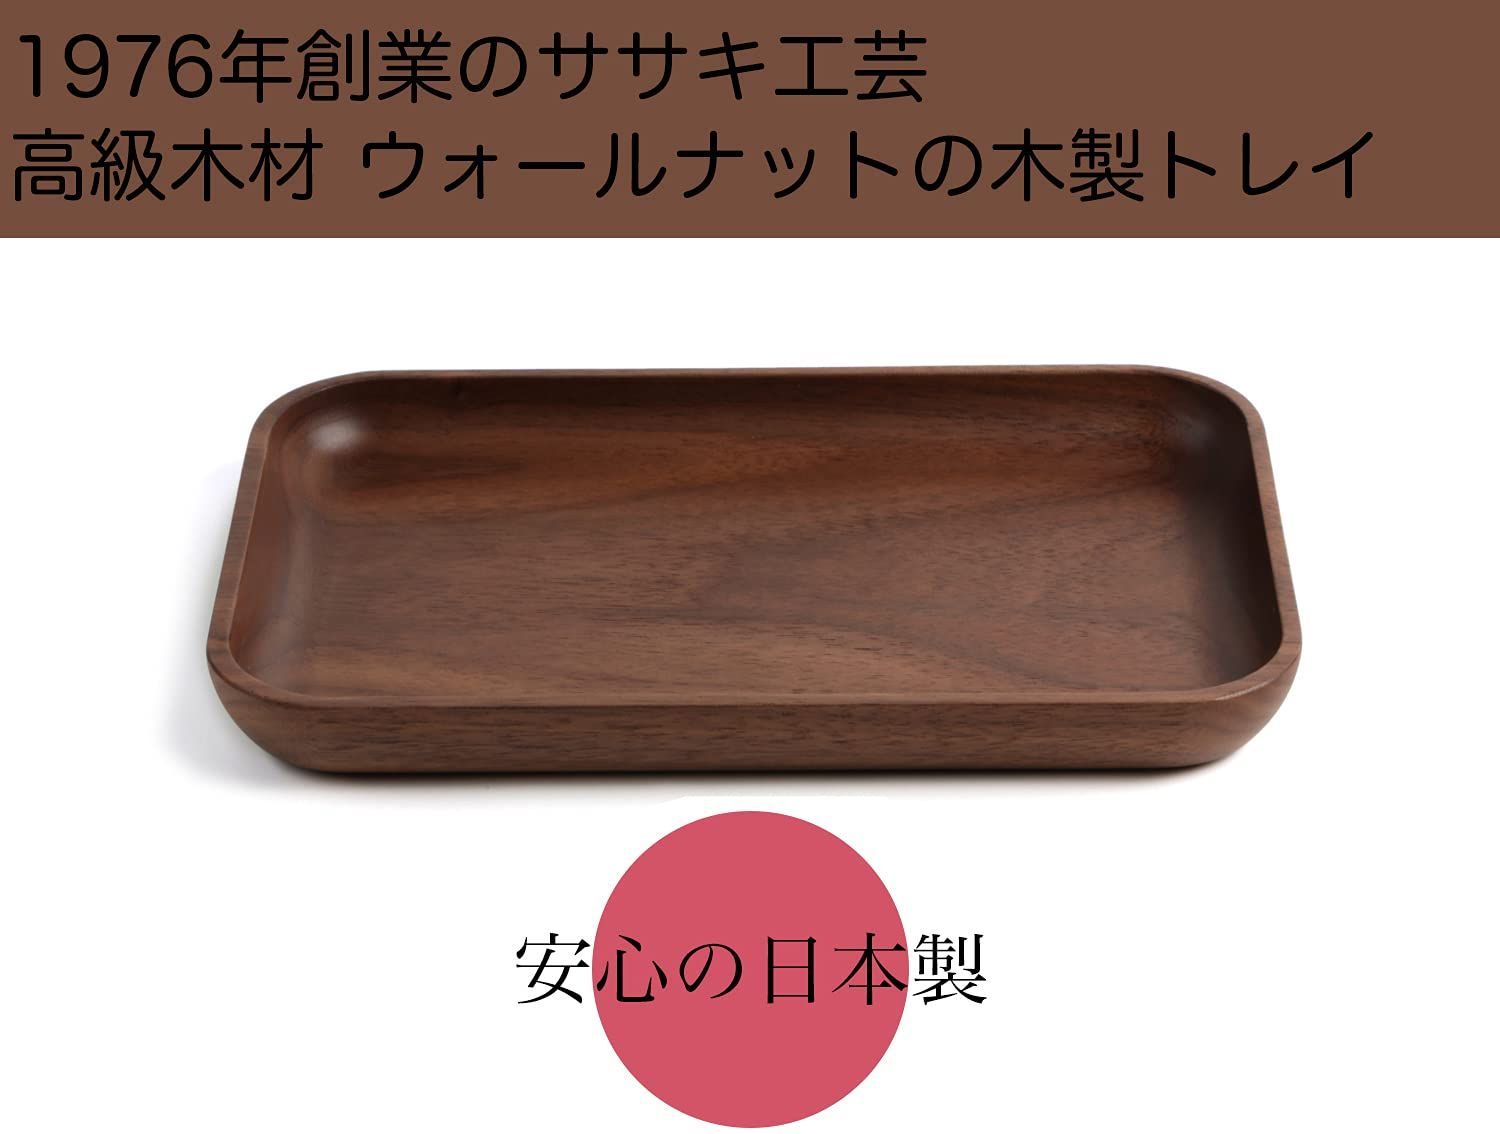 【カラー: ウォールナット】ササキ工芸 キャッシュトレイ コイントレイ 木製 ウ-1